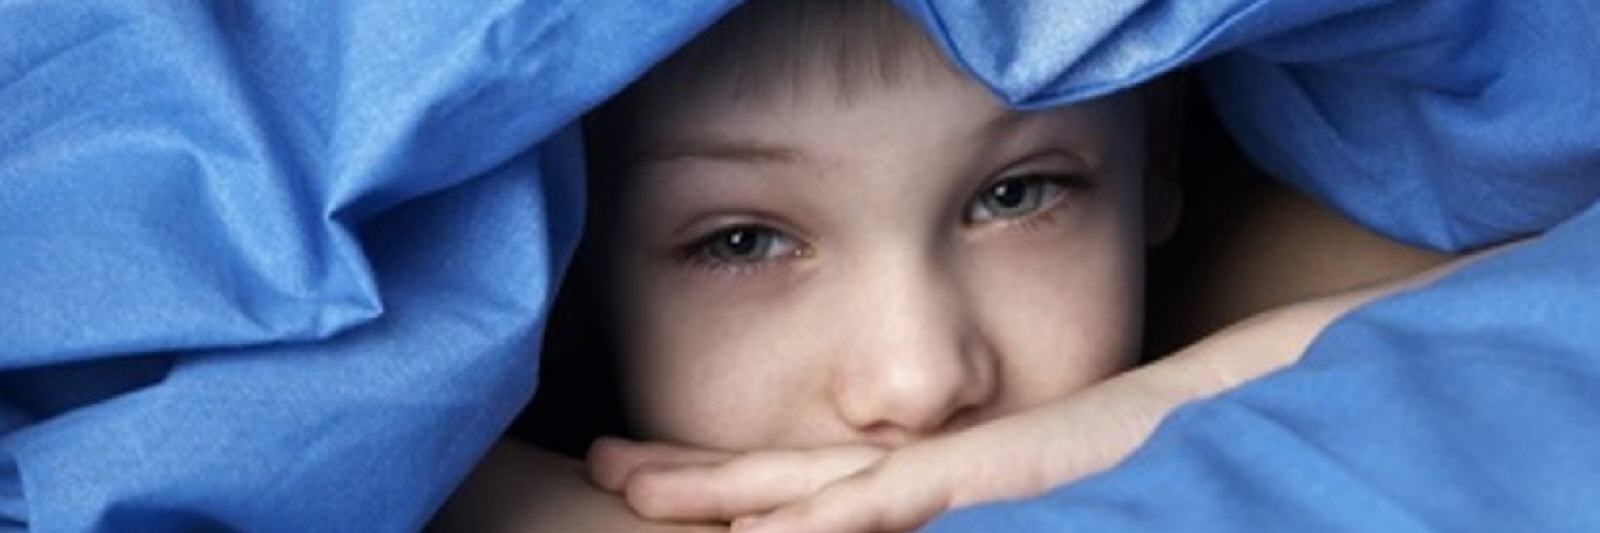 Insomni infantil: així podem ajudar els més petits a agafar el son